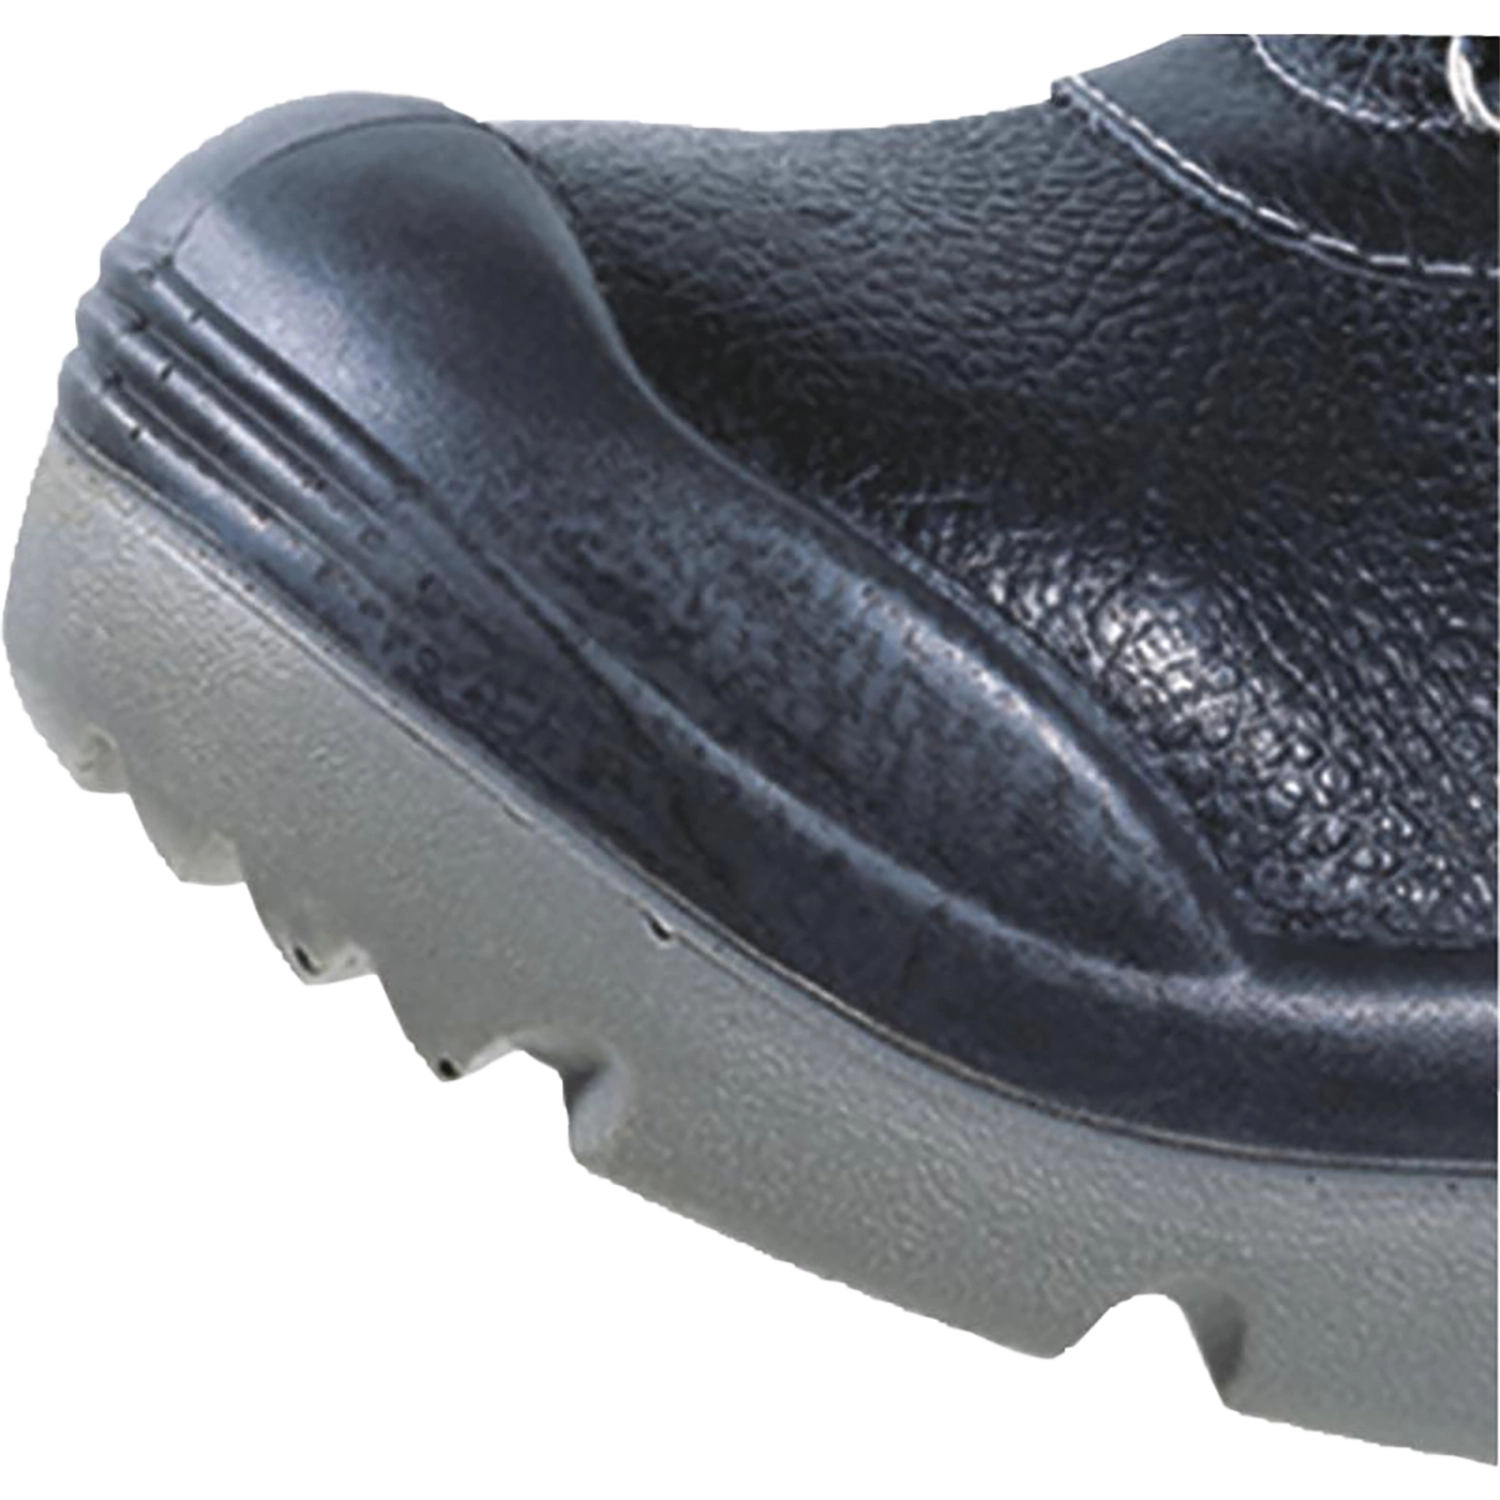 Hoog model schoenen - X-Large  - Sault S3 - zwart - maat 45